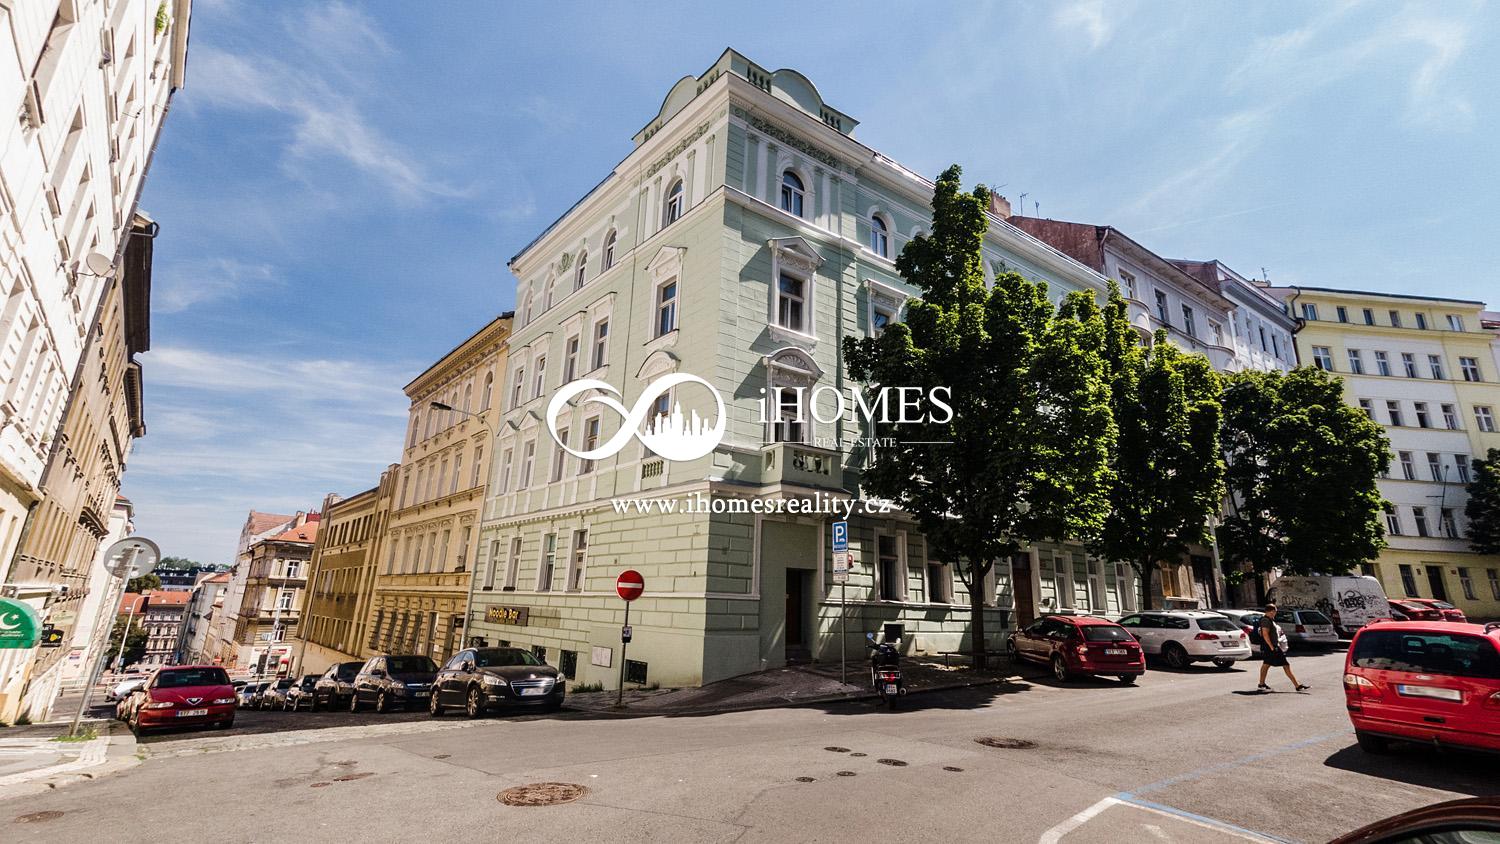 iHomesreality.cz Vám výhradním zastoupení nabízí  byt 3+kk, v OV 74,2m2  ve centru Prahy.